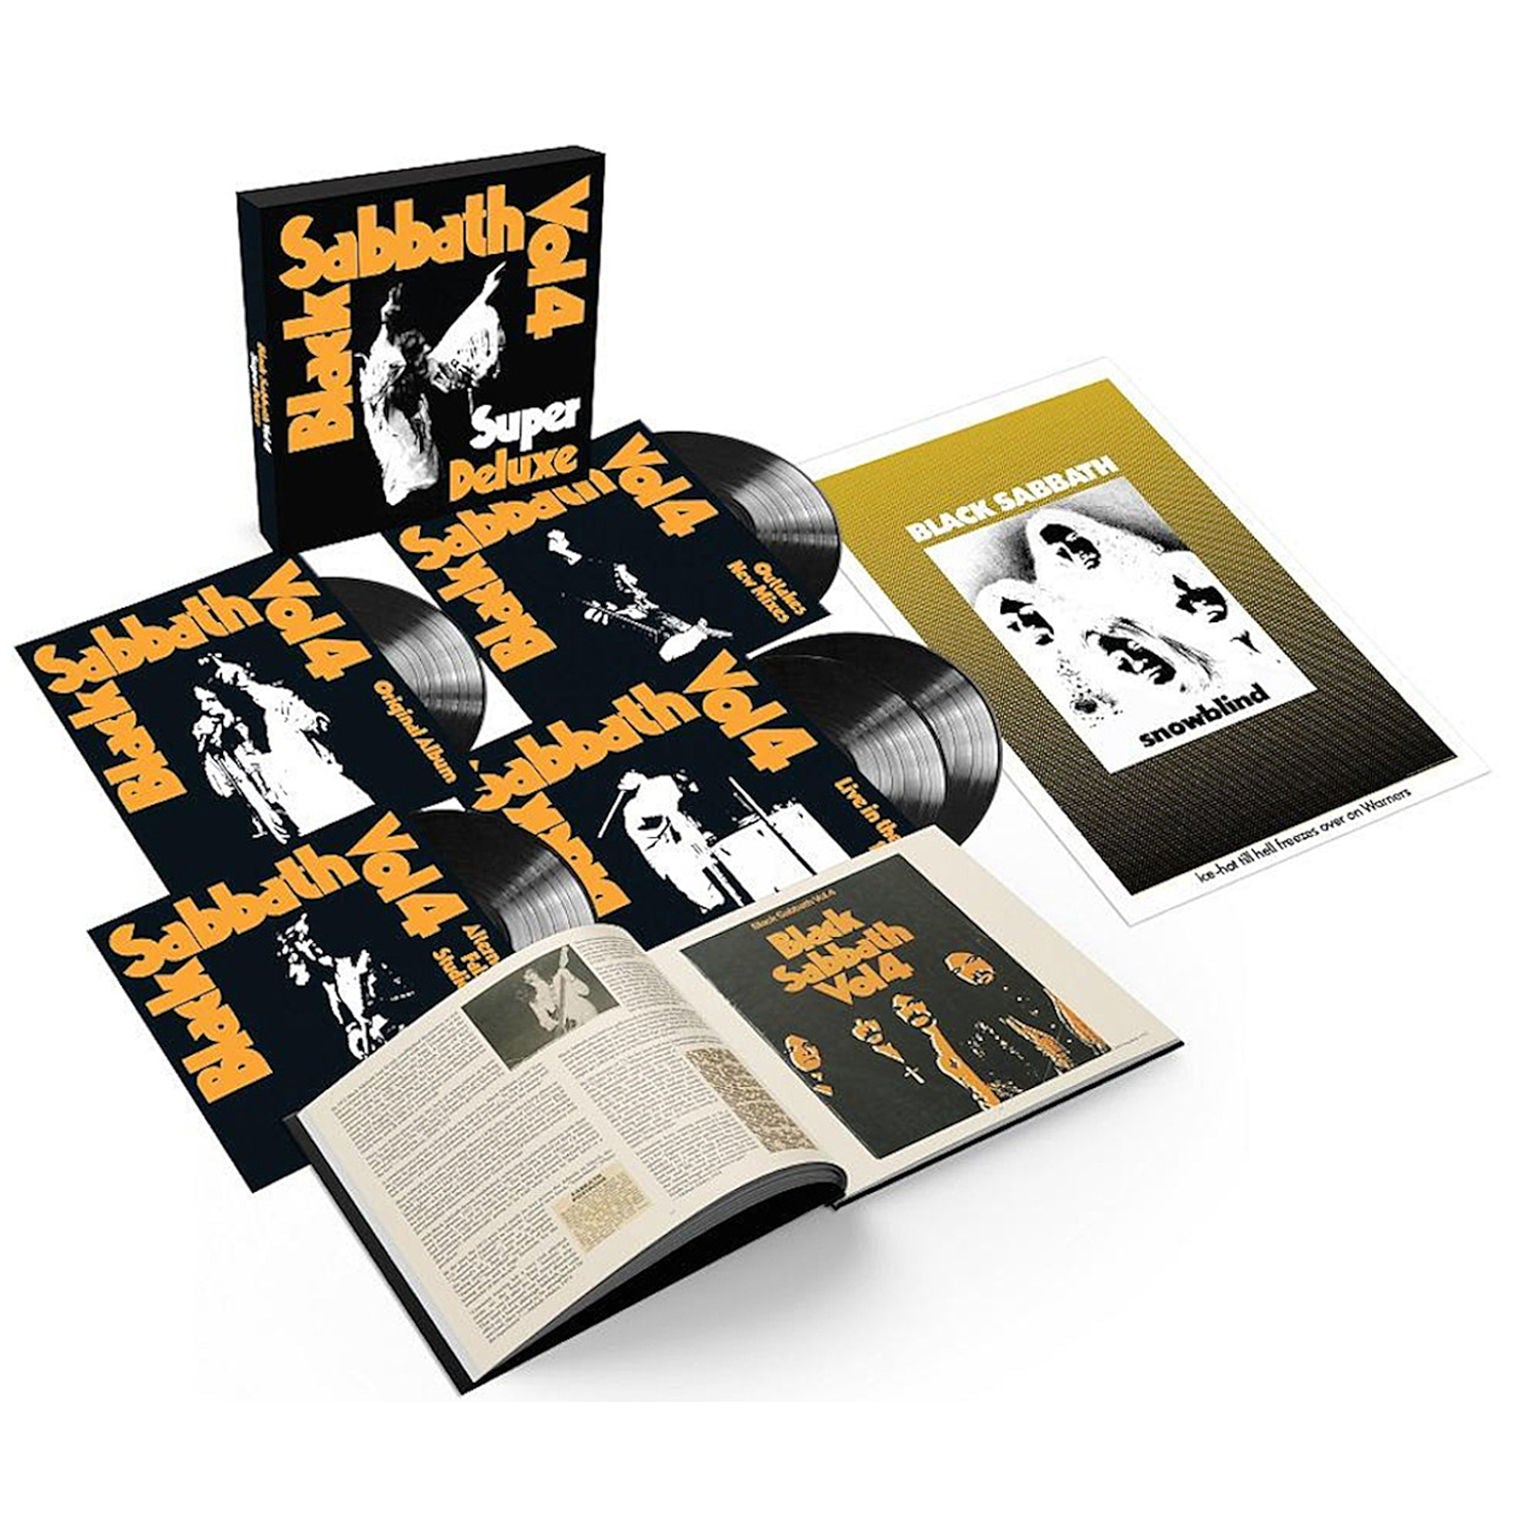 Black Sabbath - Vol 4: Super Deluxe Vinyl Box Set